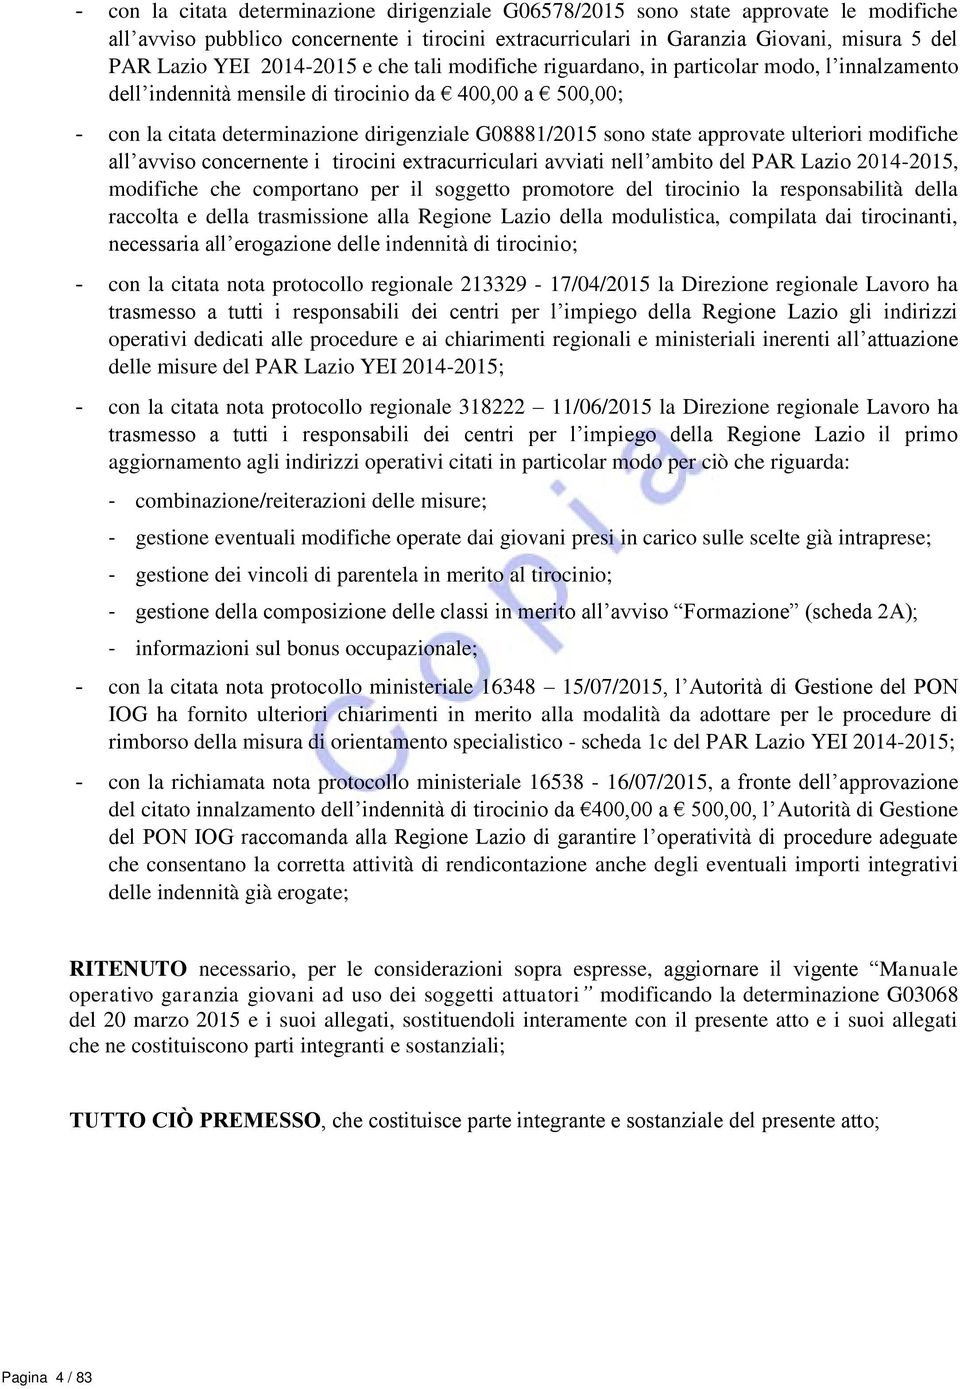 state approvate ulteriori modifiche all avviso concernente i tirocini extracurriculari avviati nell ambito del PAR Lazio 2014-2015, modifiche che comportano per il soggetto promotore del tirocinio la